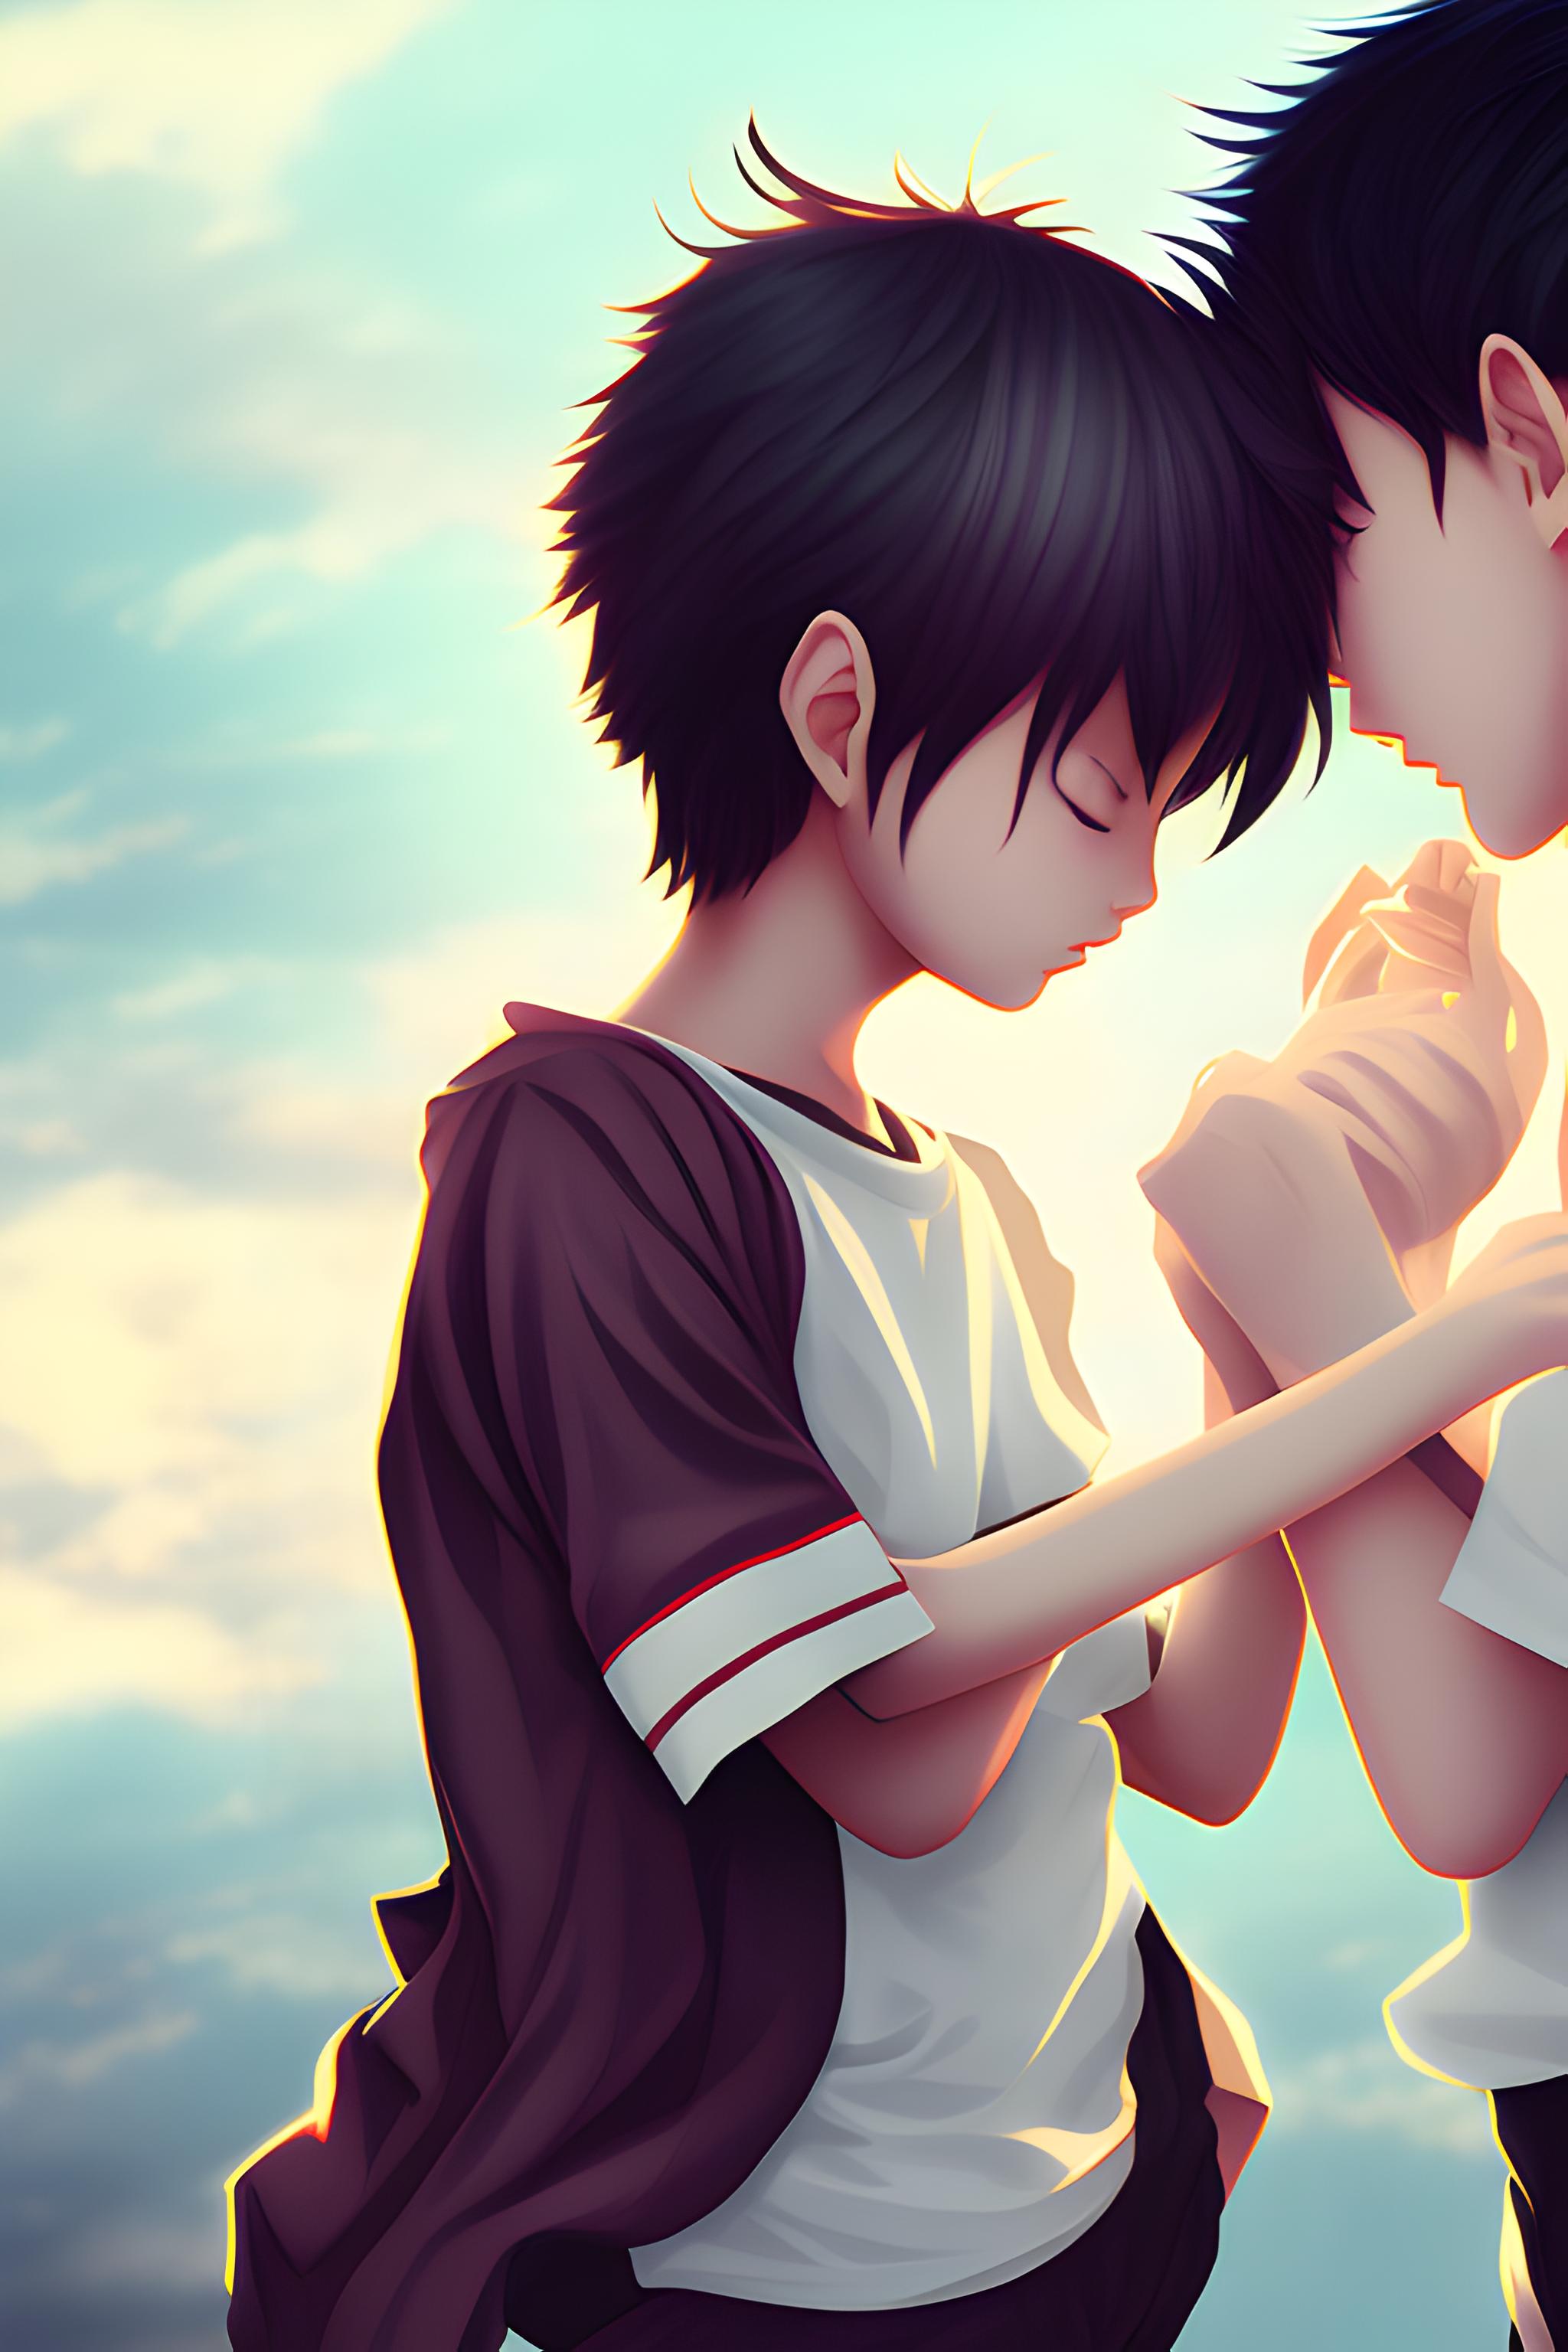 Anime girl and boy kissing